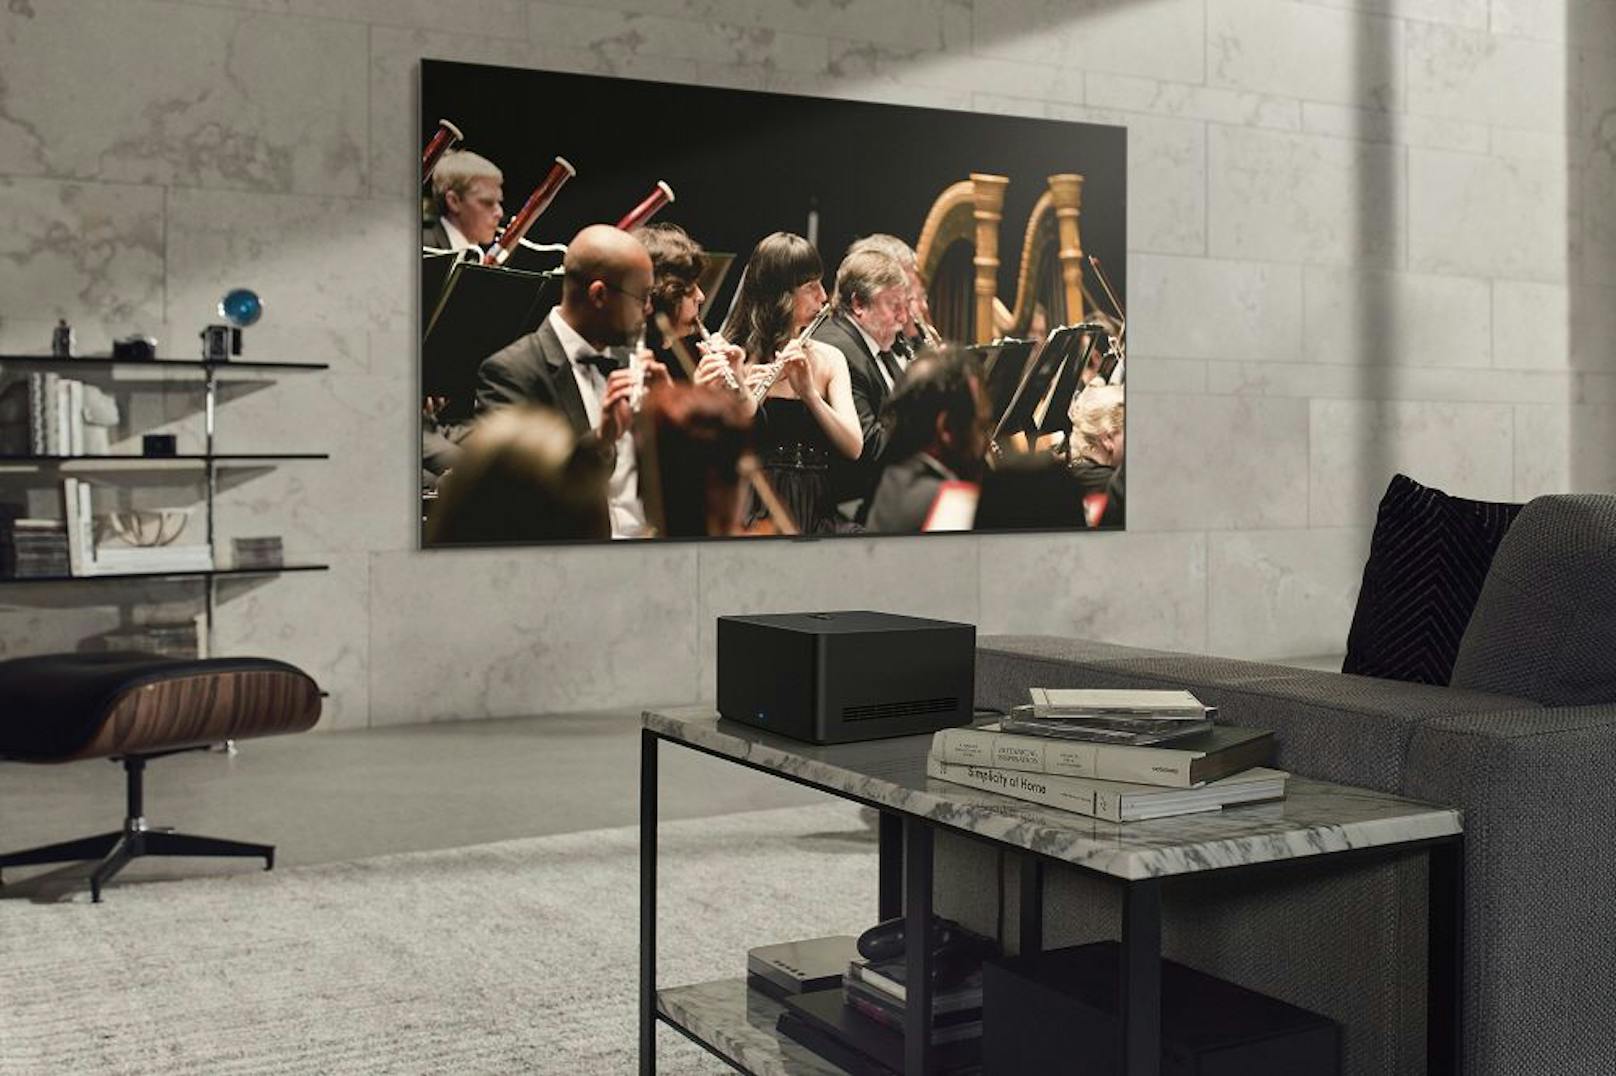 LG bringt den weltweit ersten kabellosen OLED-TV auf den Markt.